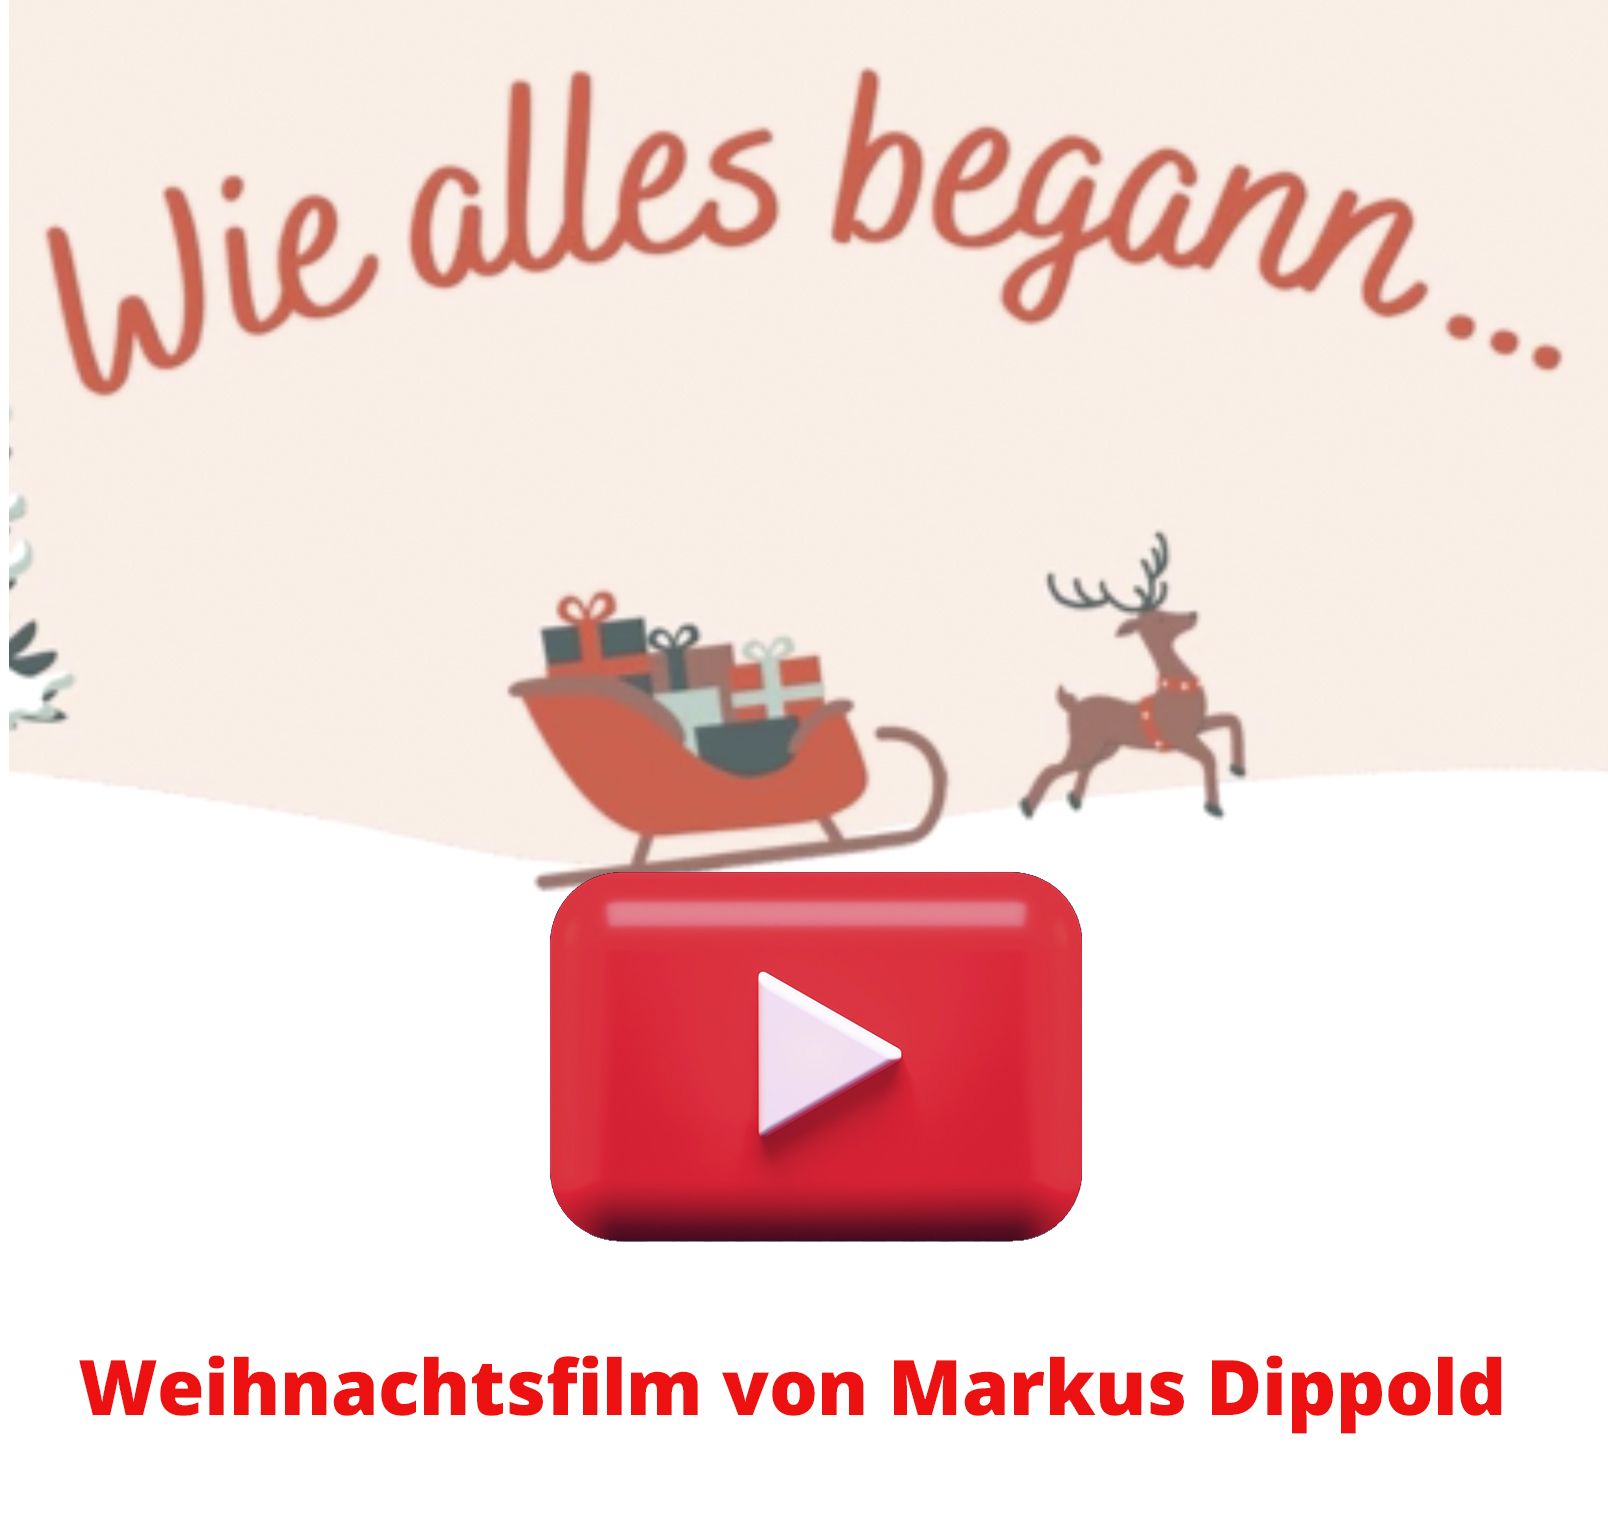 Weihnachtsfilm von Markus Dippold